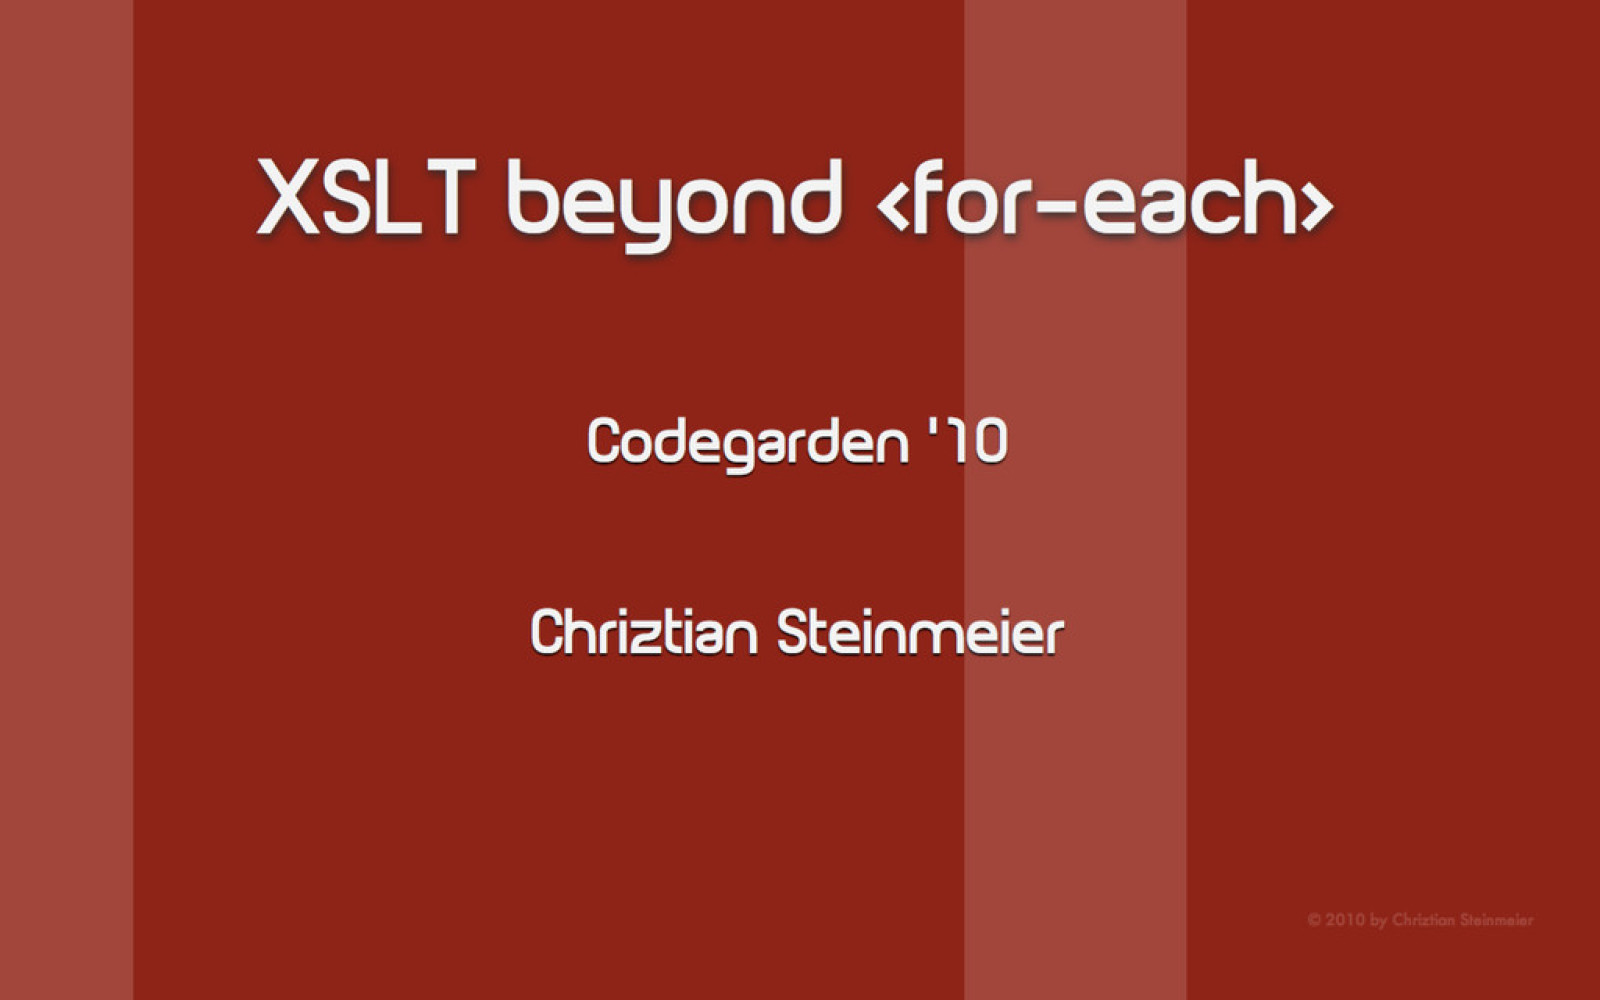 XSLT Beyond for-each